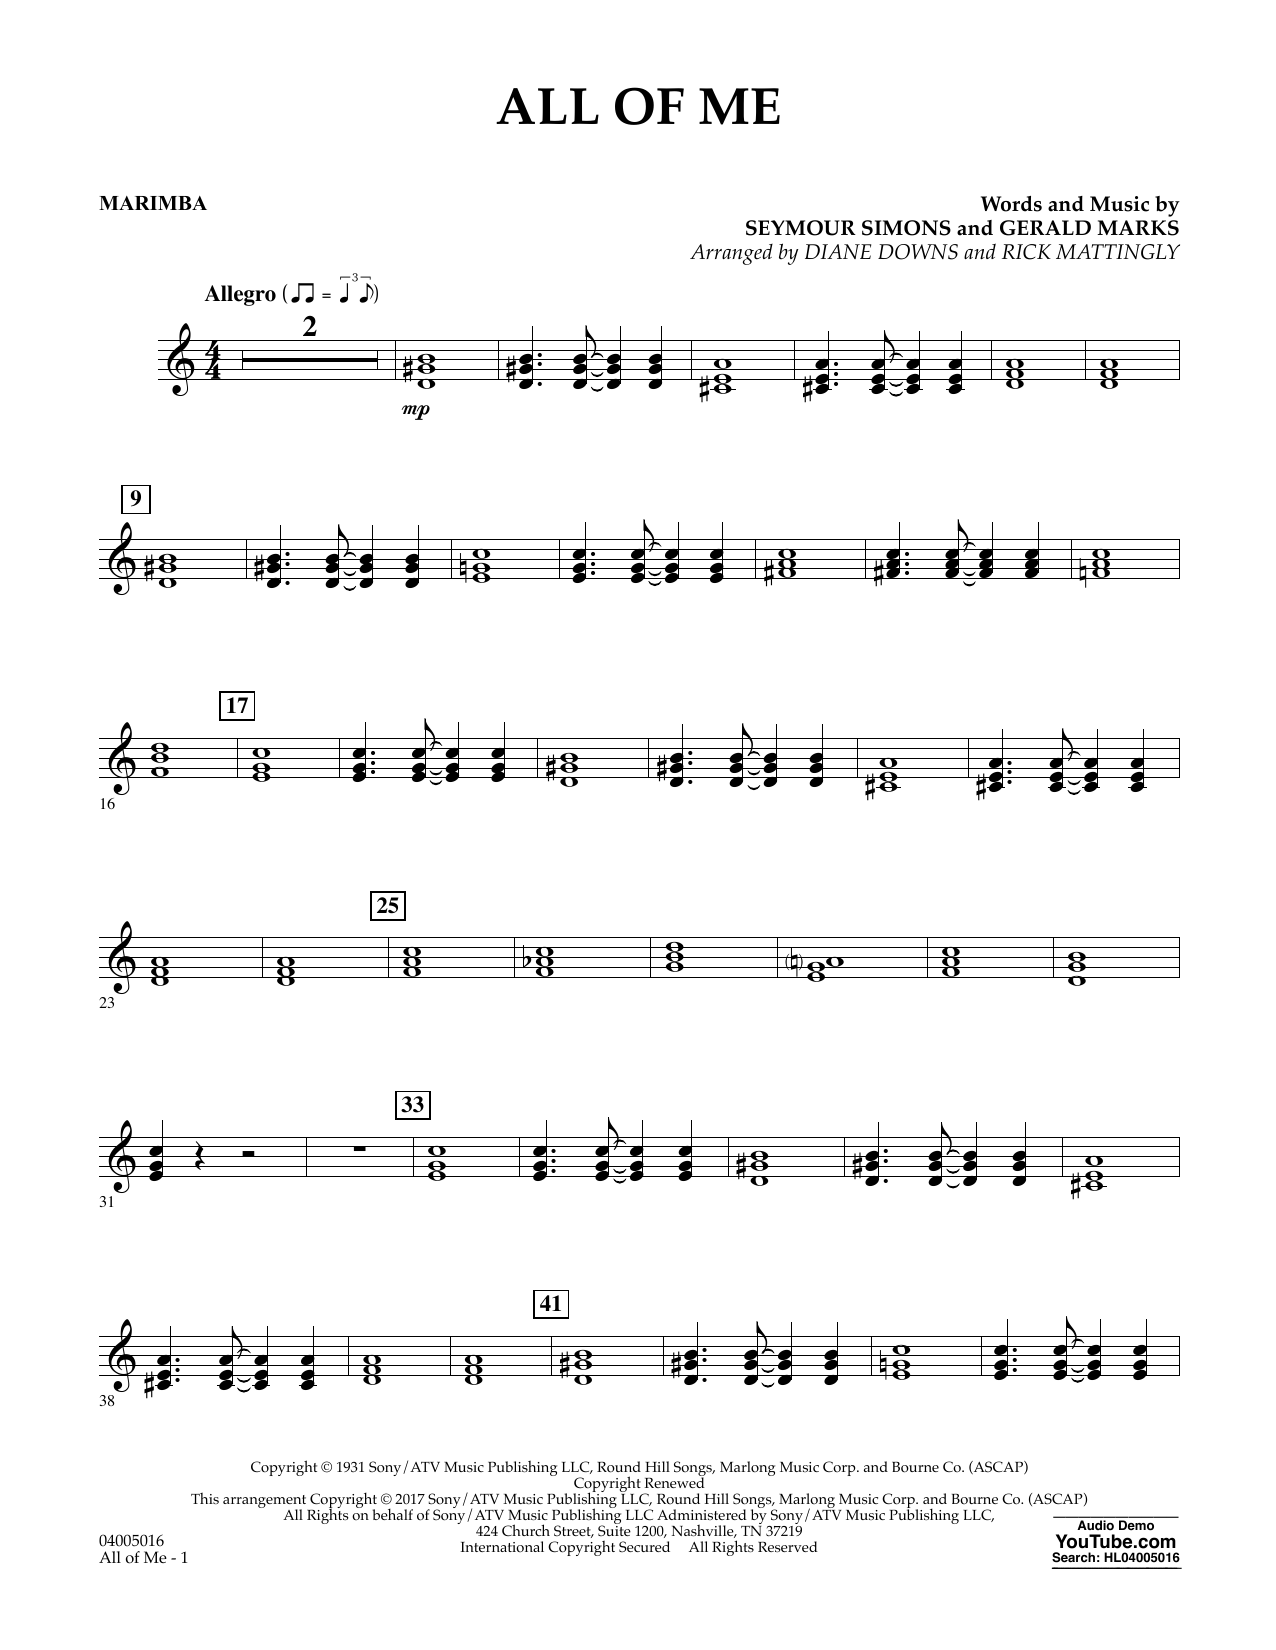 diane-downs-all-of-me-marimba-sheet-music-pdf-notes-chords-jazz